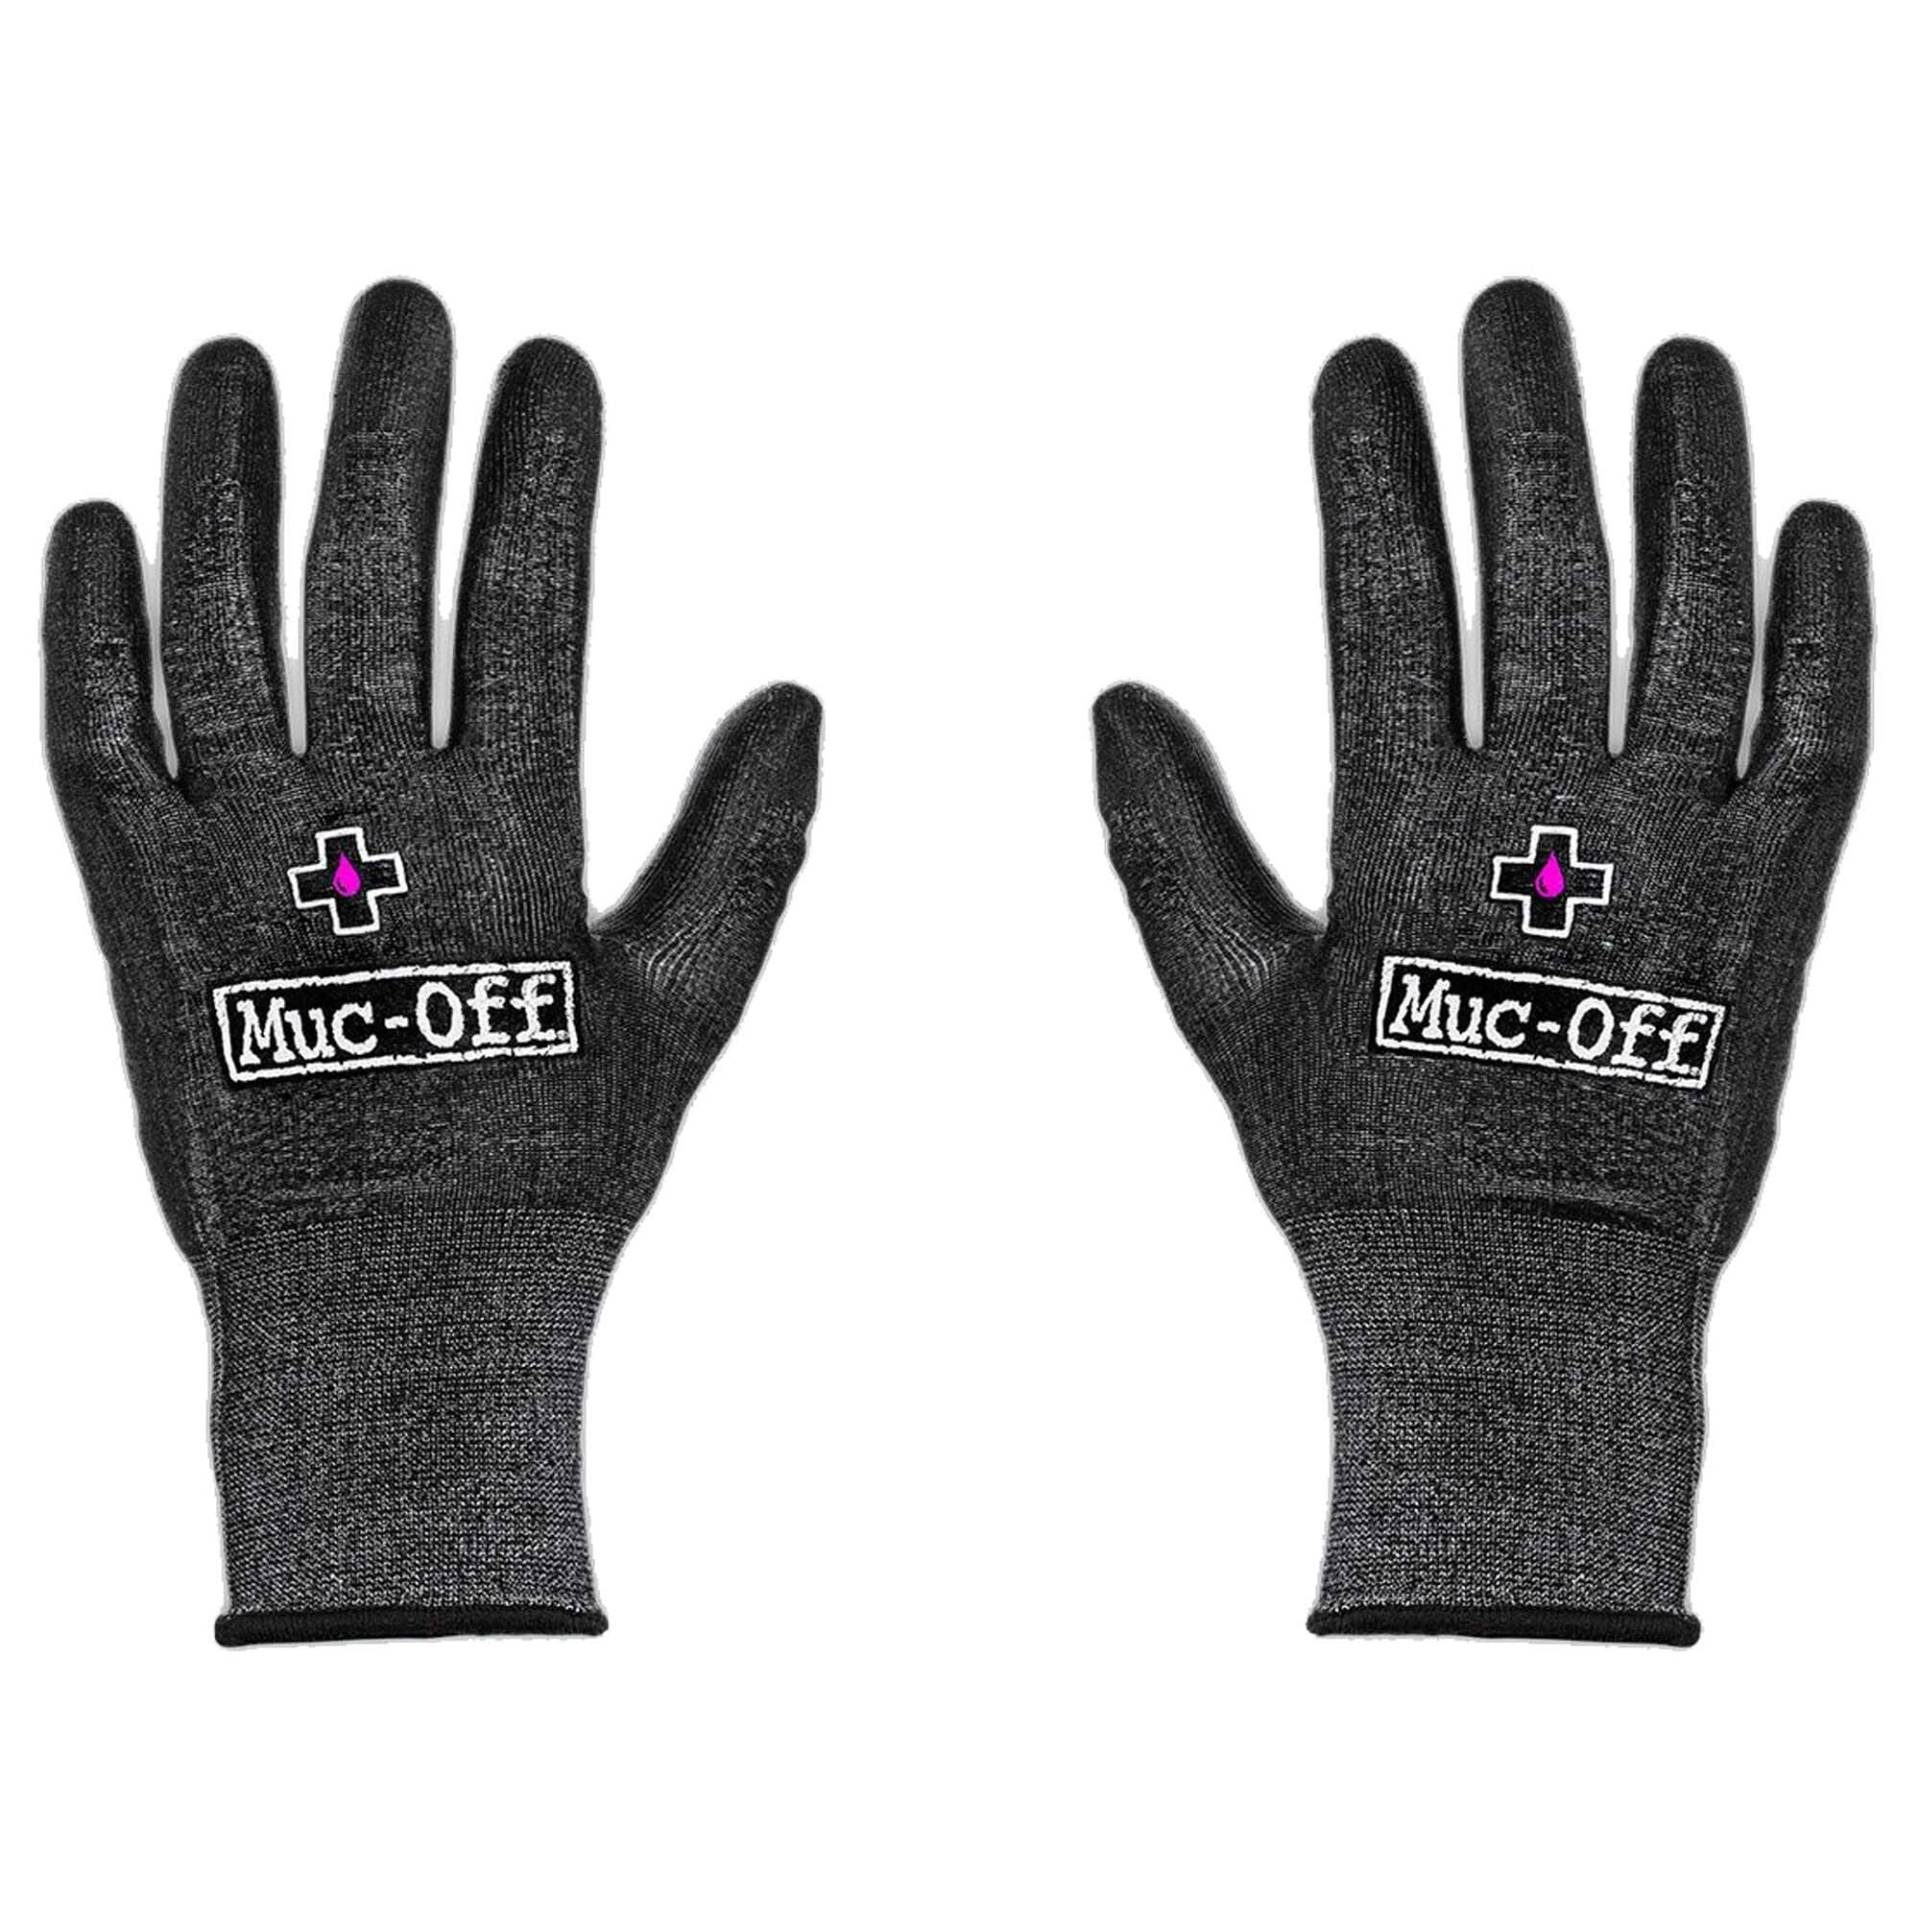 Muc-Off Mechaniker Handschuhe, XL – Latexfreie Schnittschutzhandschuhe für die Wartung von Fahrrädern und Motorrädern – Waschmaschinengeeignete Arbeitshandschuhe von Muc-Off